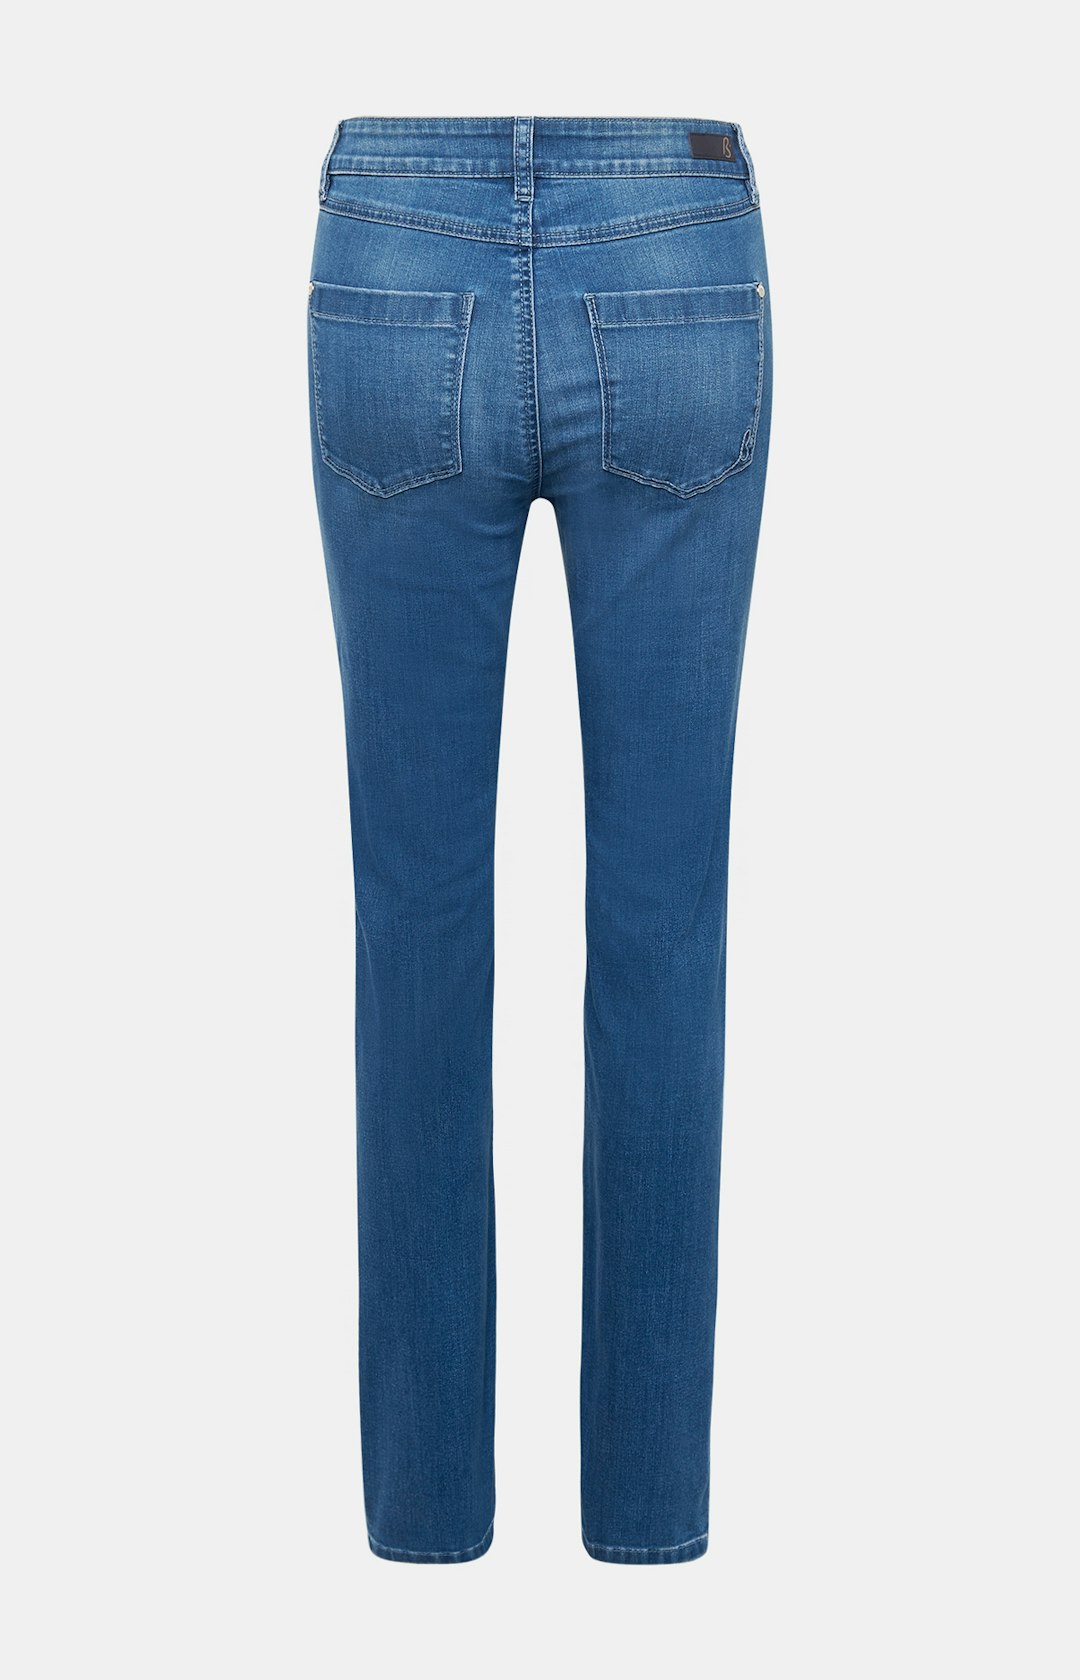 Jeans mit Strassbesatz